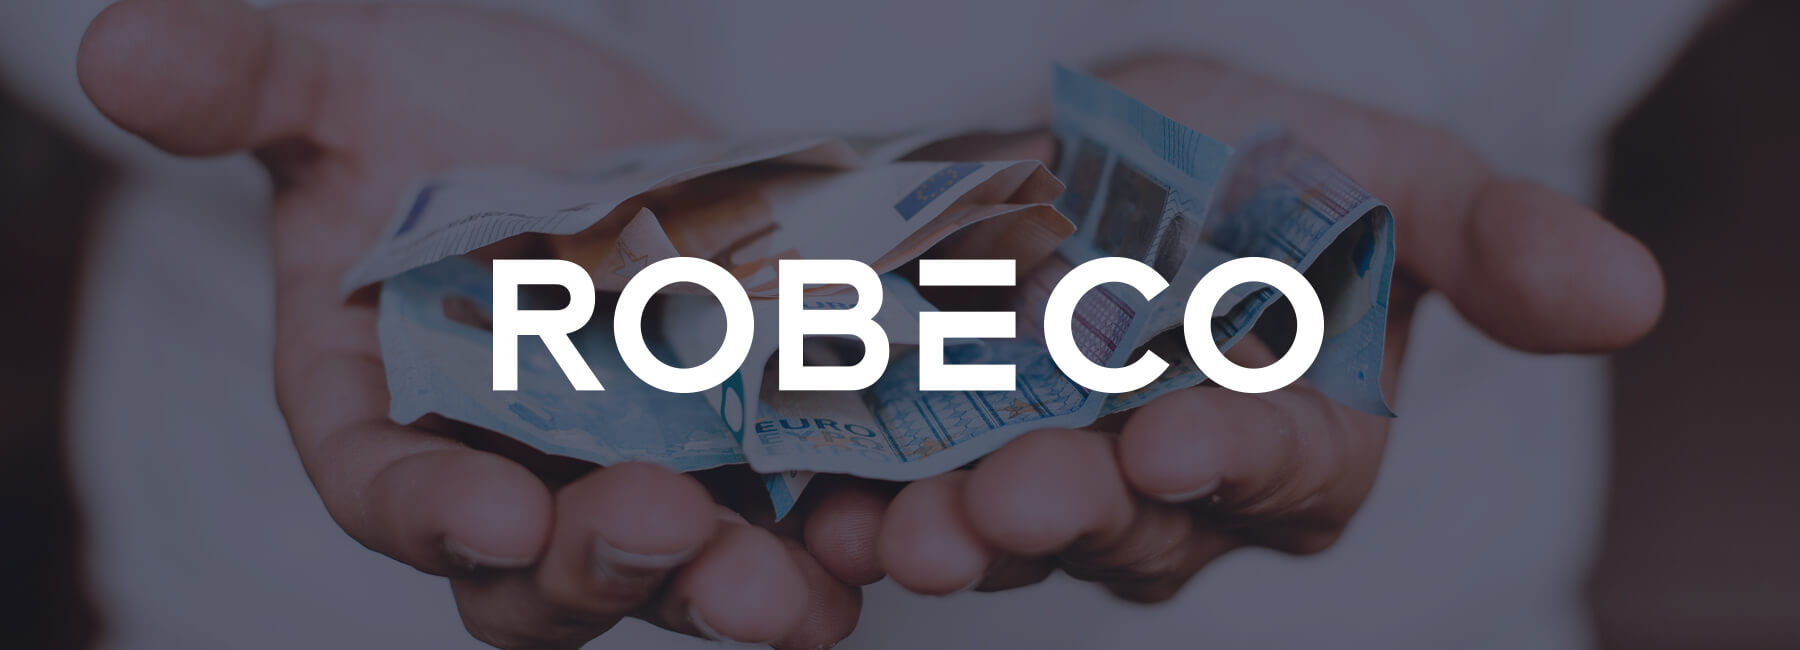 Robeco verbetert de online ervaring dankzij klantfeedback